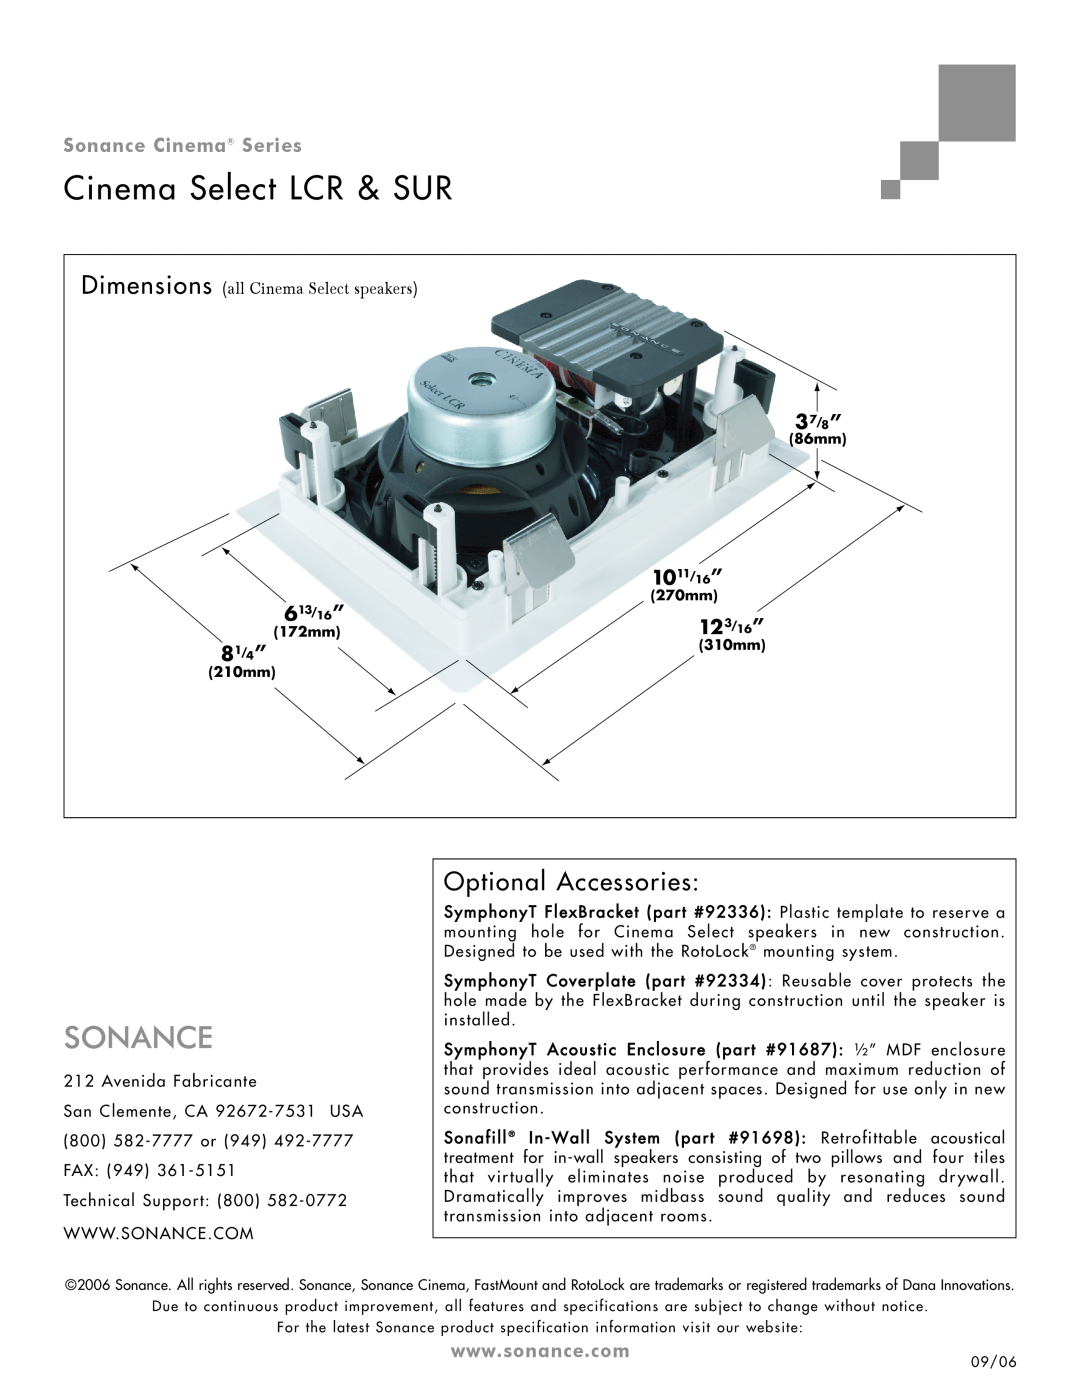 Sonance LCR & SUR Speaker Optional Accessories, Cinema Select LCR & SUR, Sonance Cinema Series, 37/8”, 1011/16”, 613/16” 